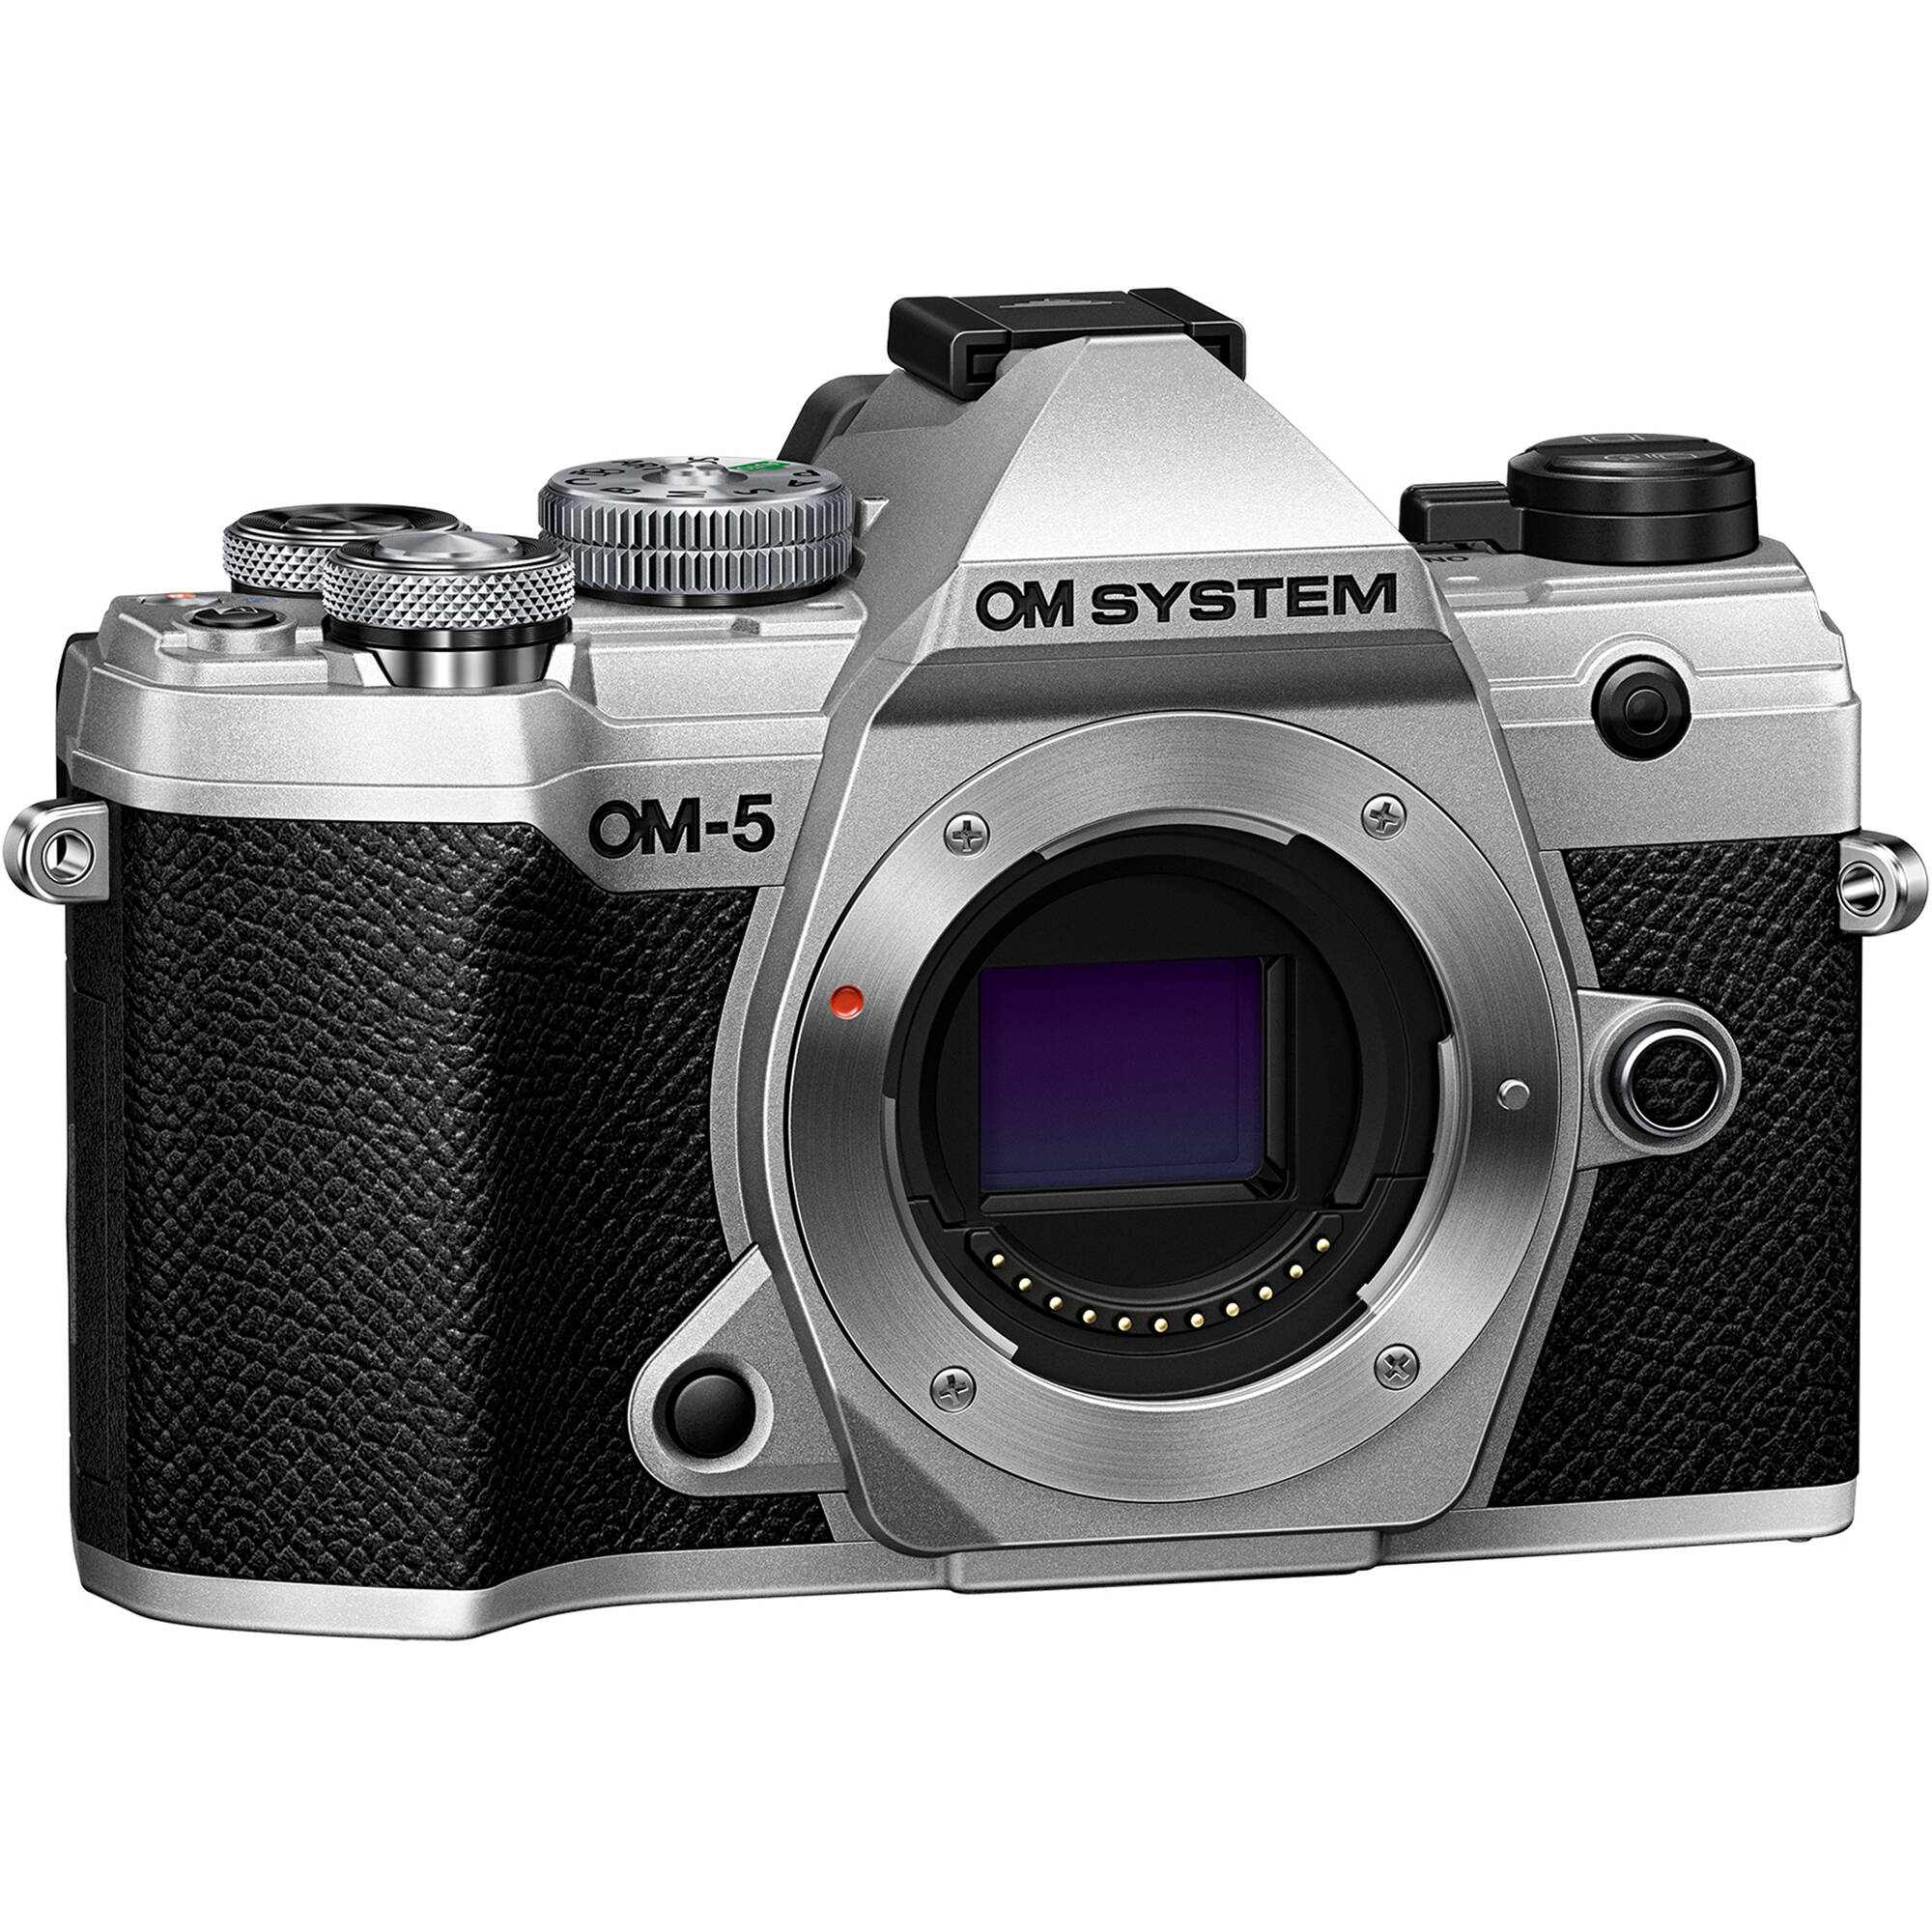 OM SYSTEM OM-5 Mirrorless Camera Silver